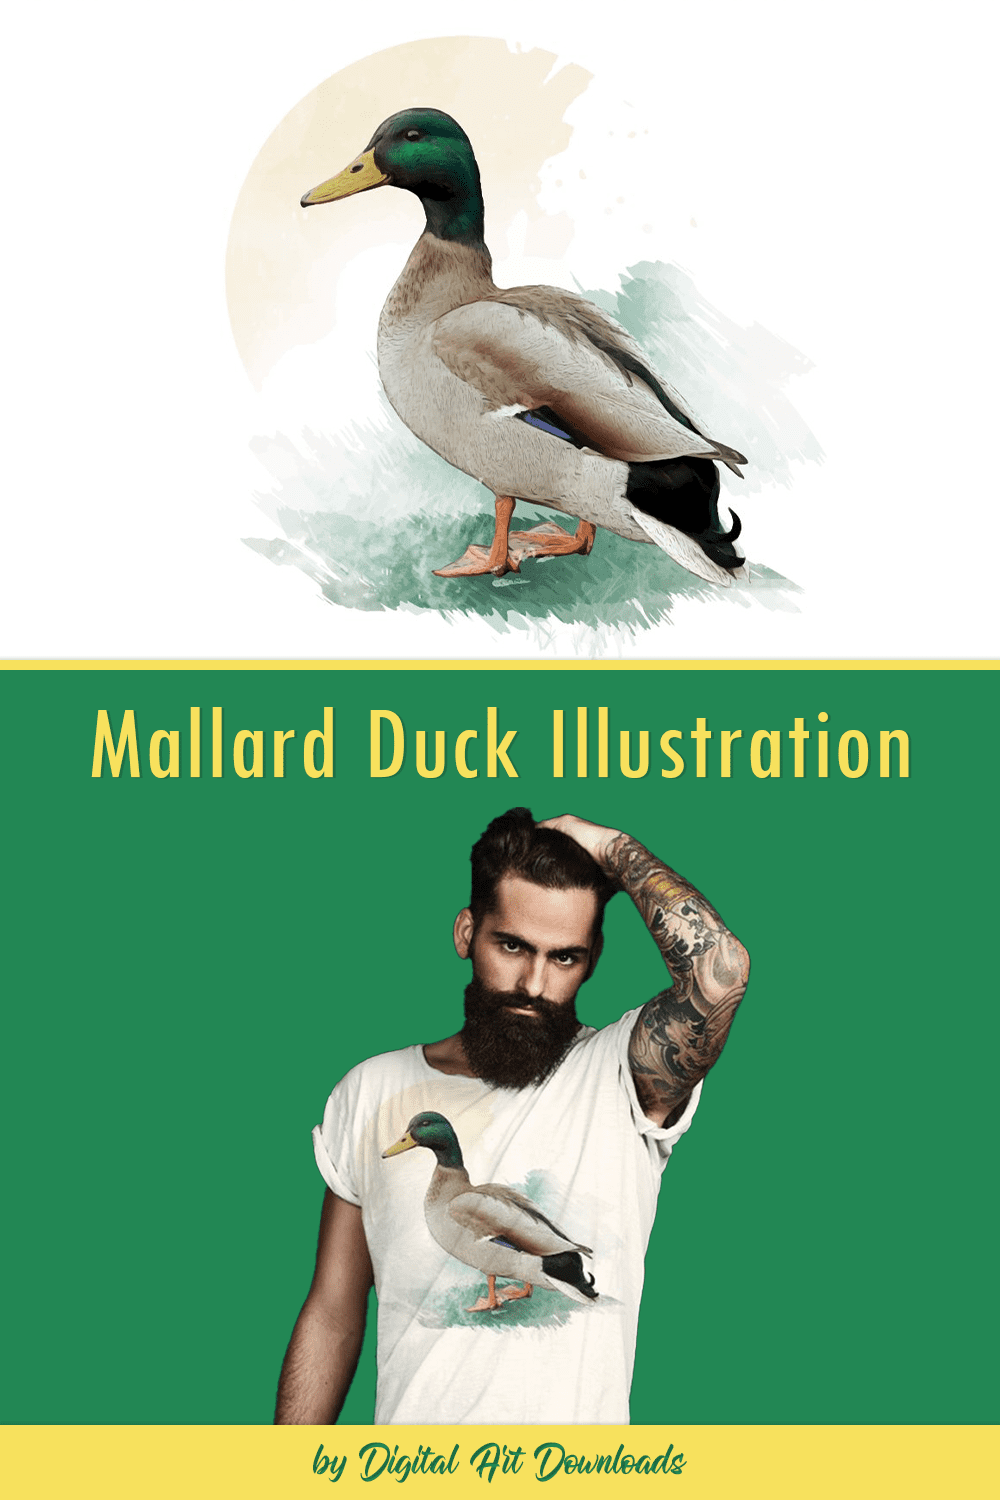 Mallard Duck Illustration pinterest image.